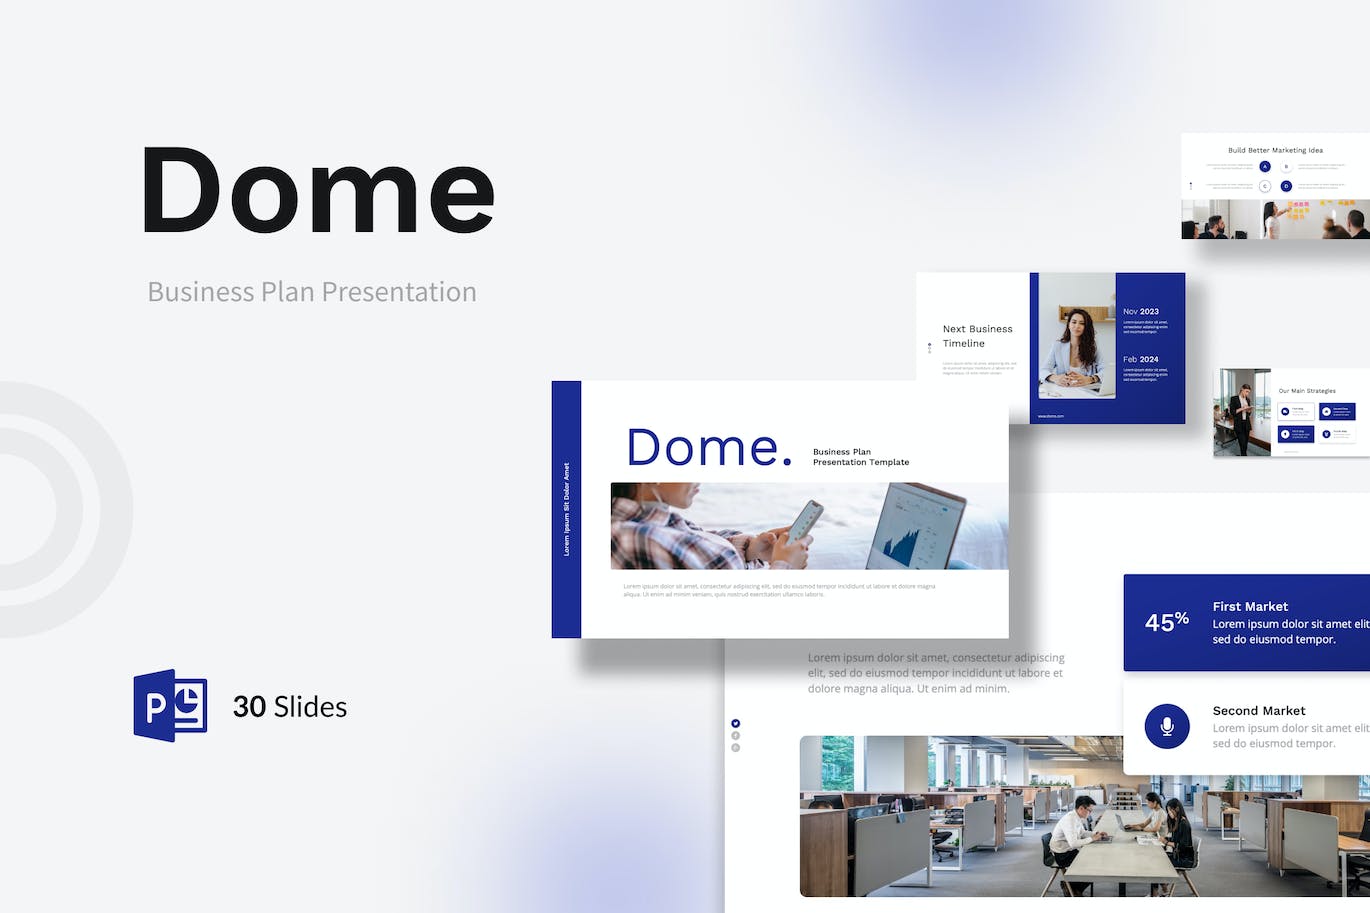 商业计划书Powerpoint幻灯片模板 Dome – Business Plan PowerPoint Template 幻灯图表 第1张